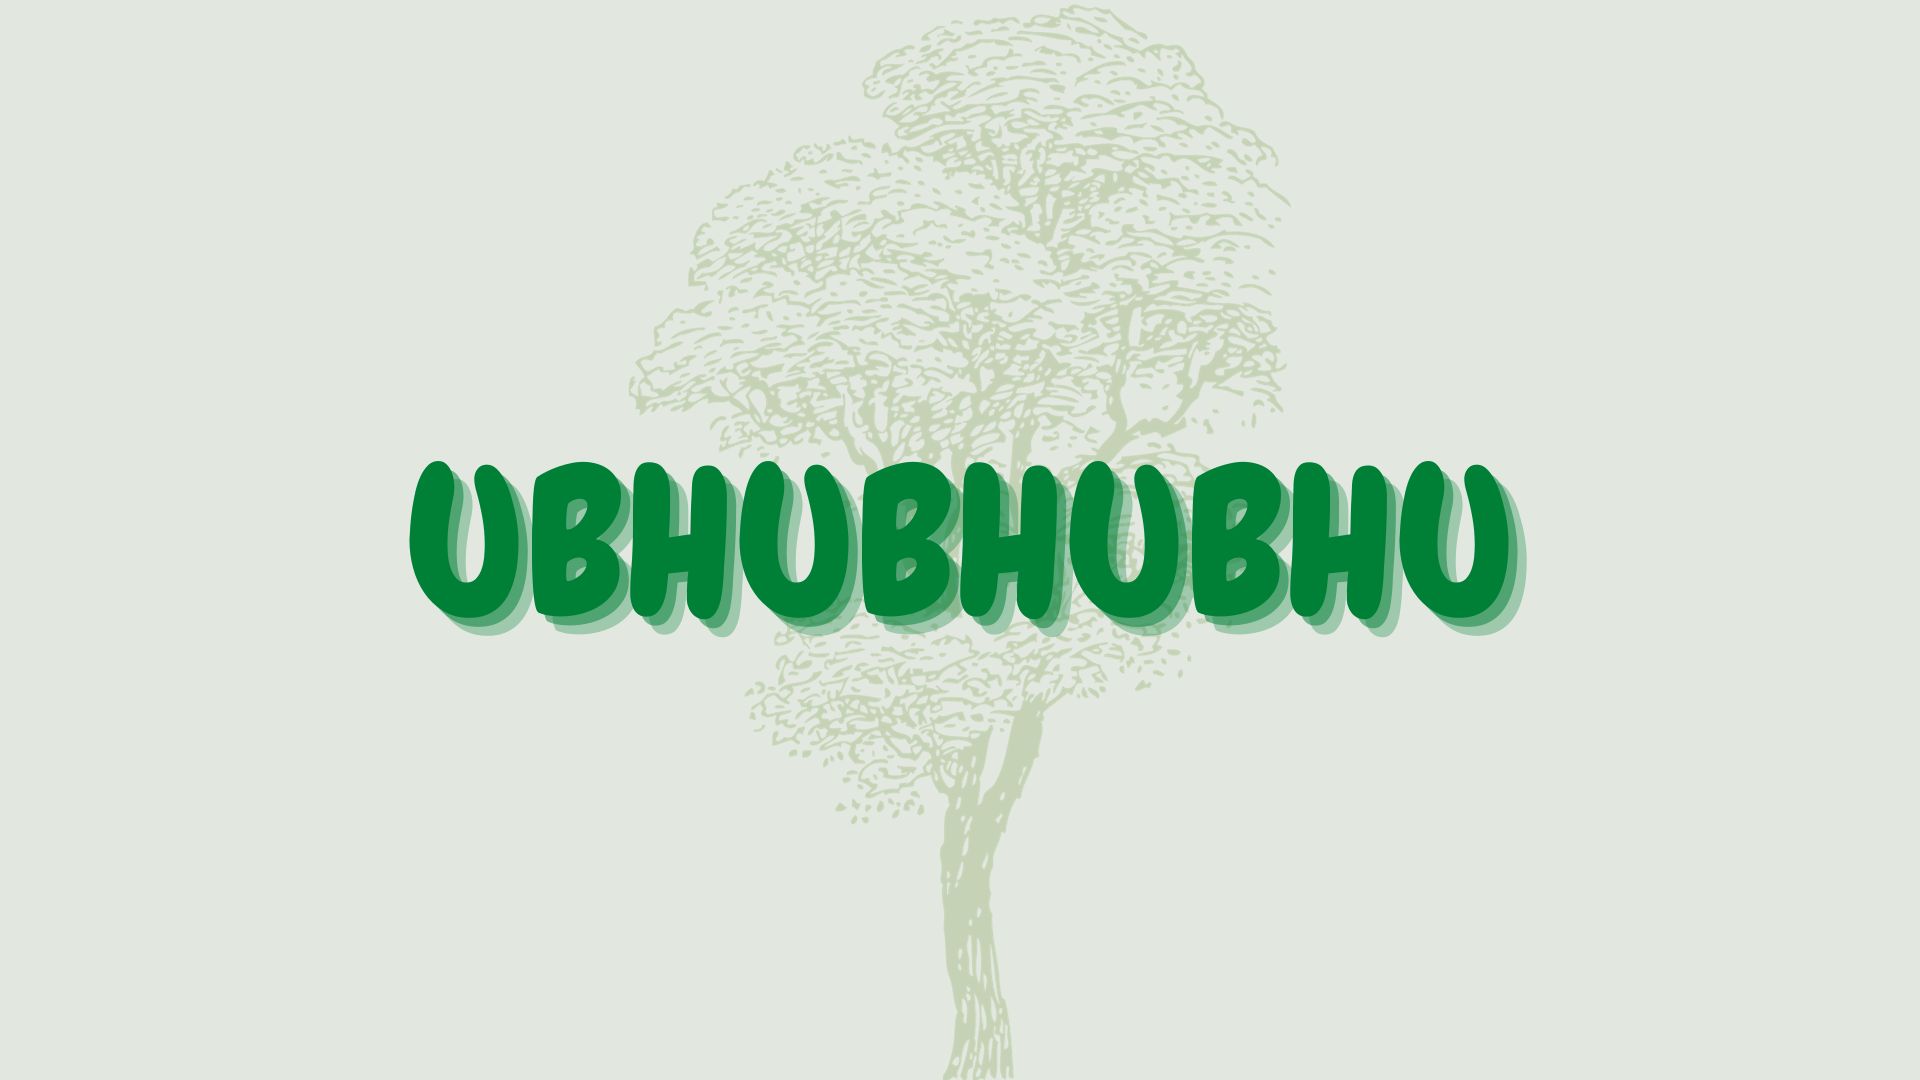 ubhubhubhu